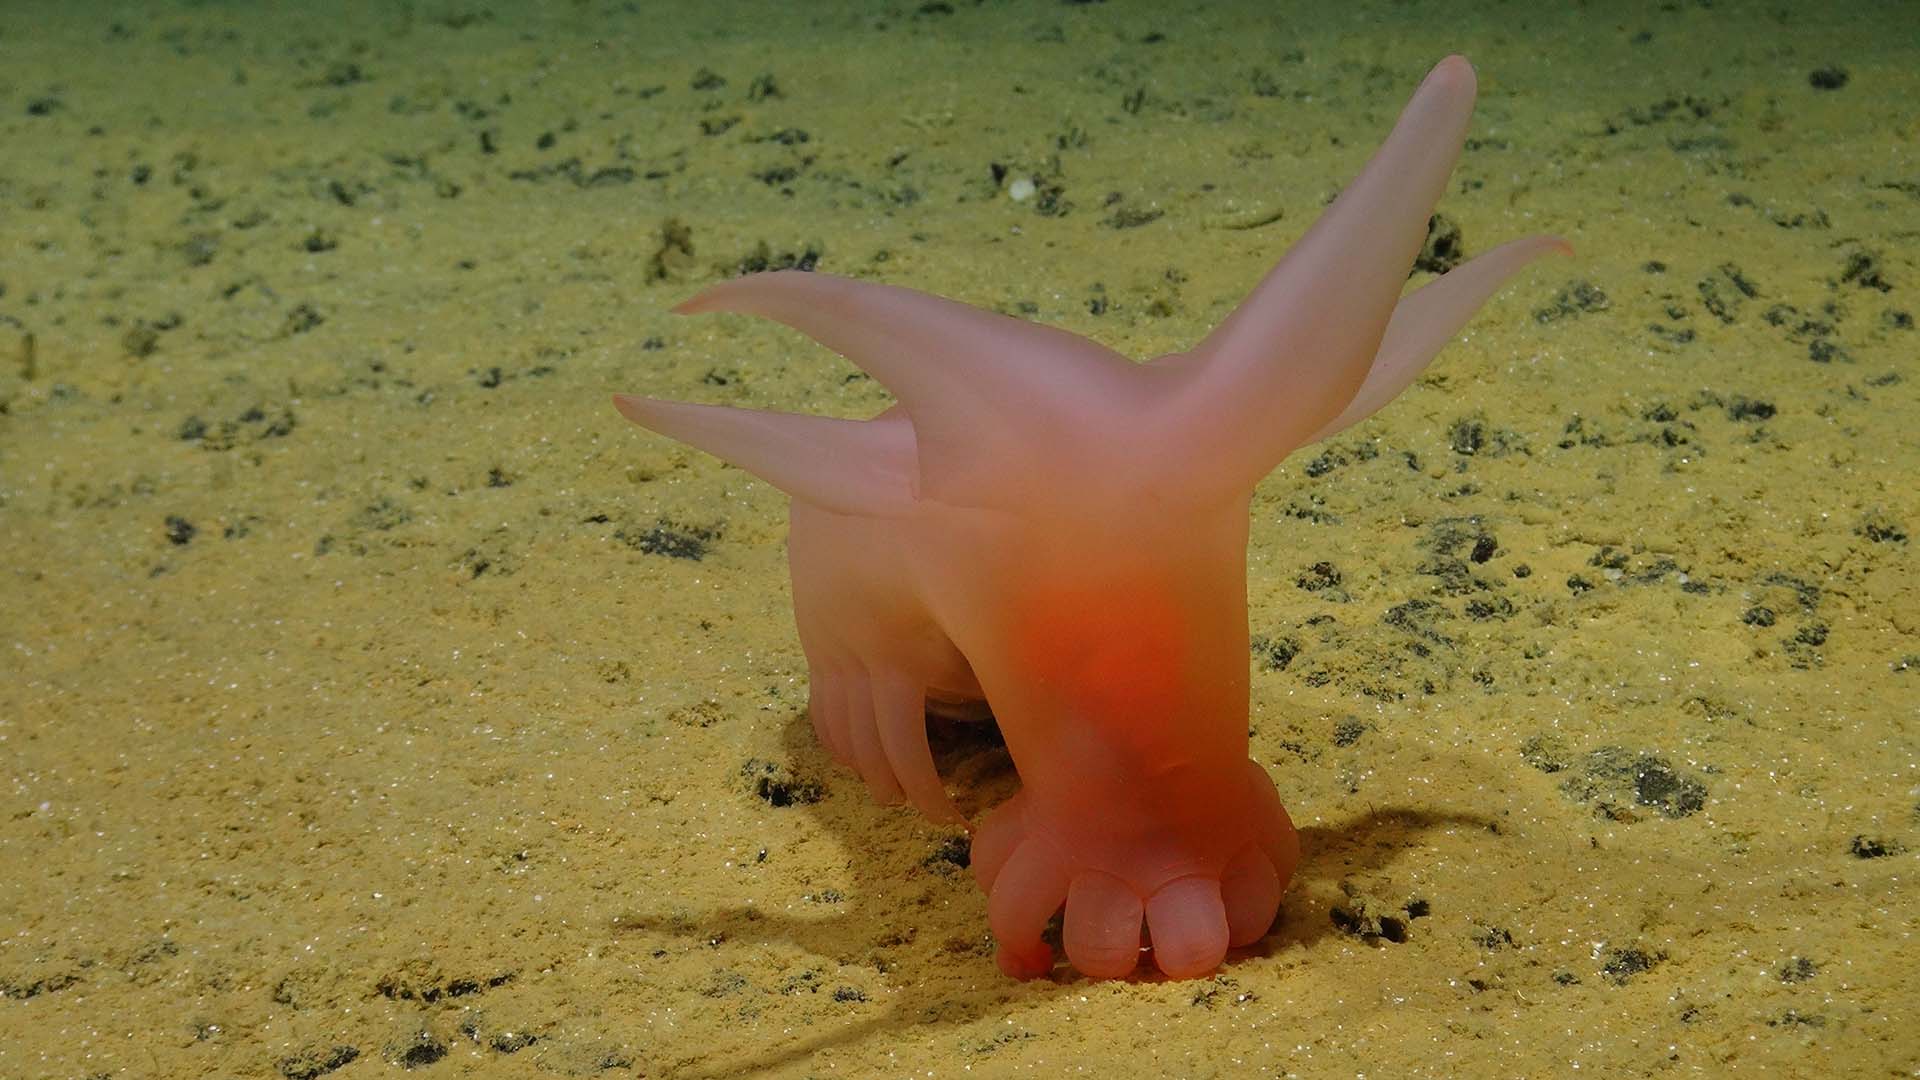 Rosa svagt genomskinligt djur med rosa fötter på havsbottnen.